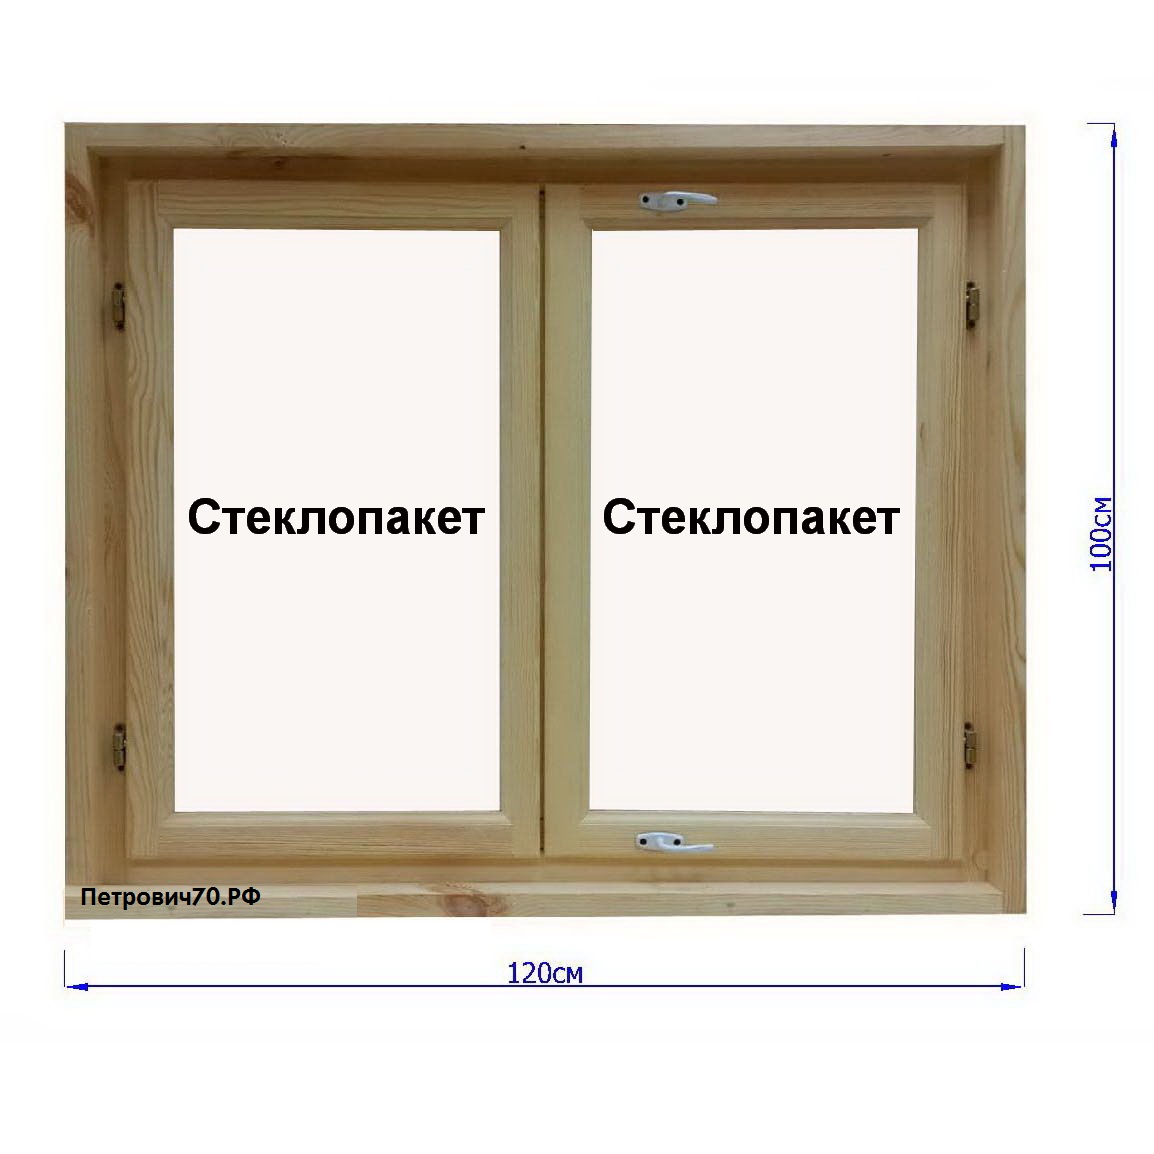 Классификация окон с деревянными профилями и типы готовых конструкций: русские и европейские